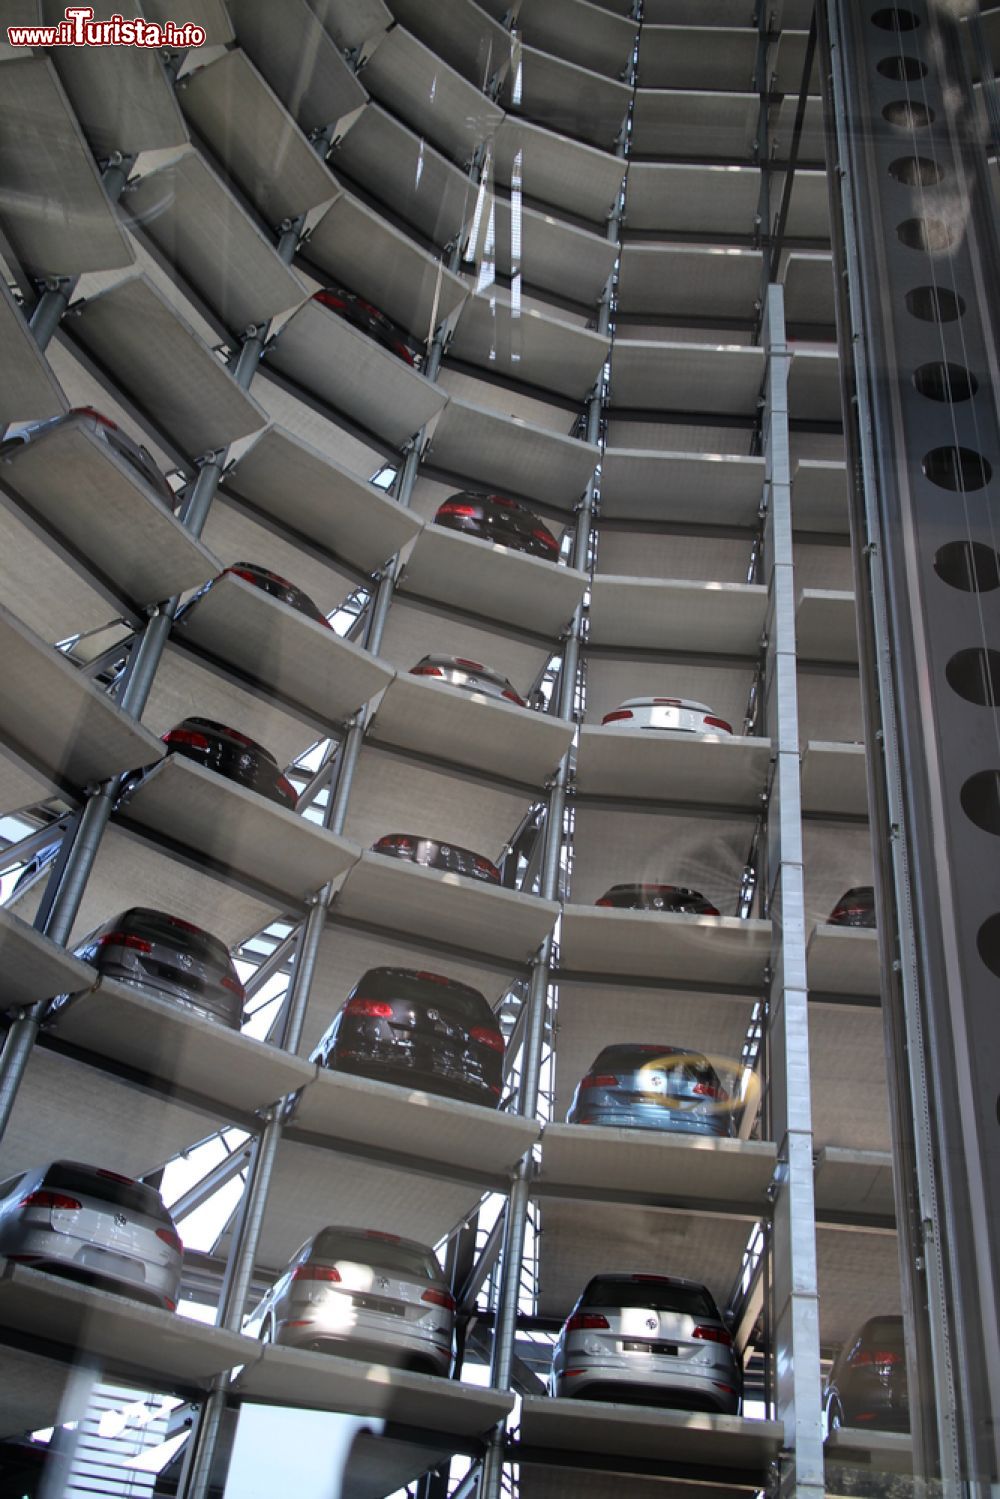 Immagine Le nuove auto della Volkswagen nel magazziono della Autostadt di Wolfsburg. - © Lasse Hendriks / Shutterstock.com